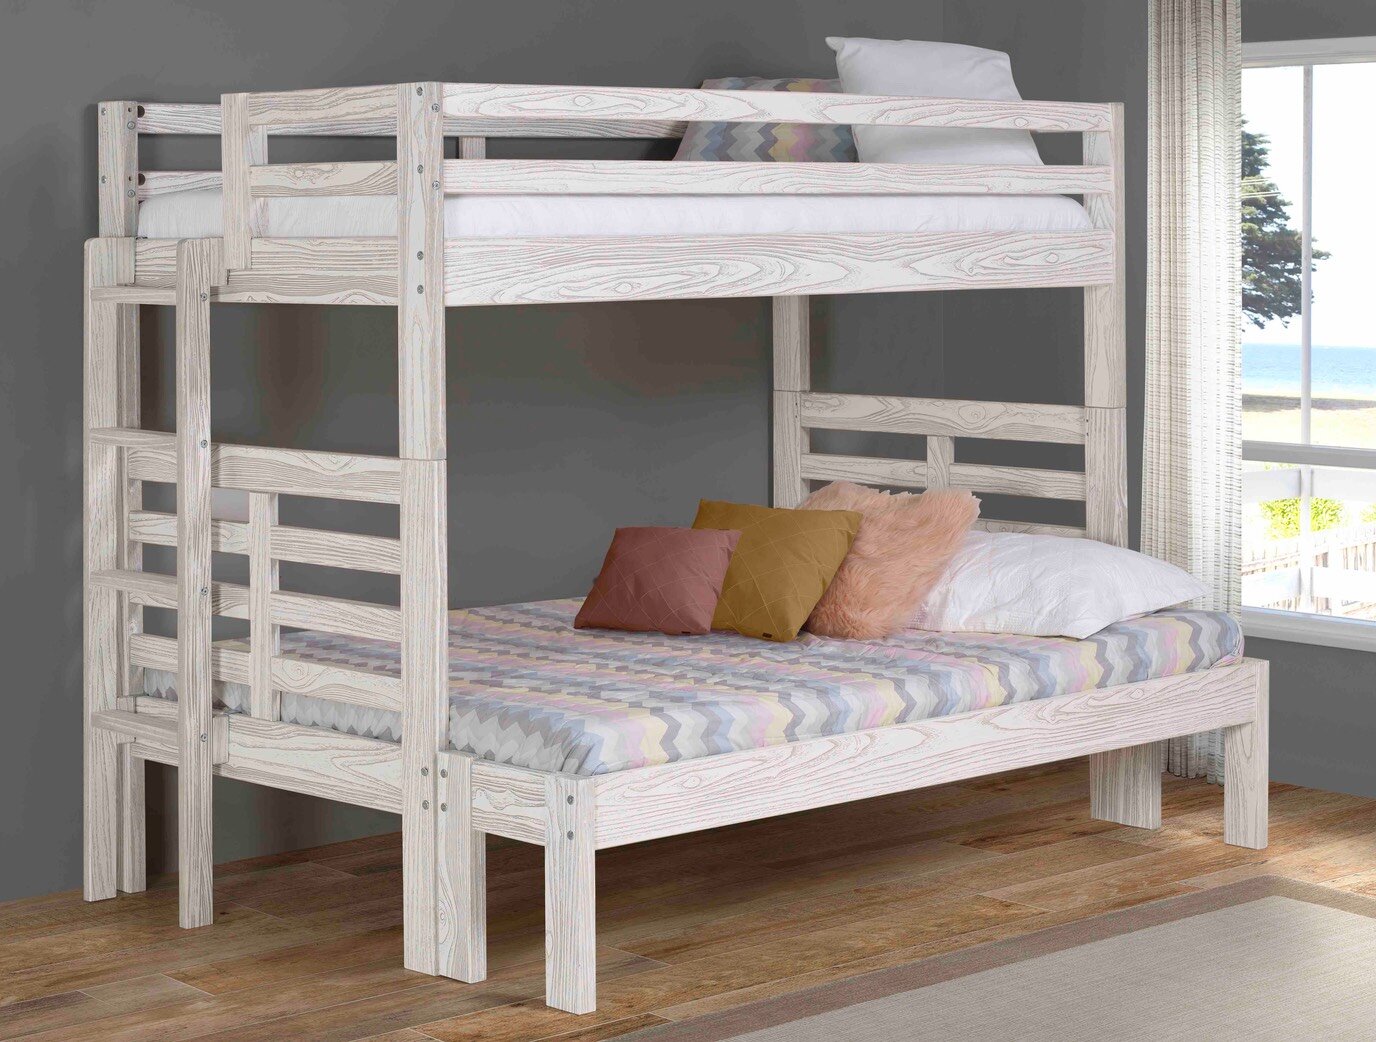 Platform Bedcottage Solid Wood Bunk Bed, Birch Wood Bunk Beds